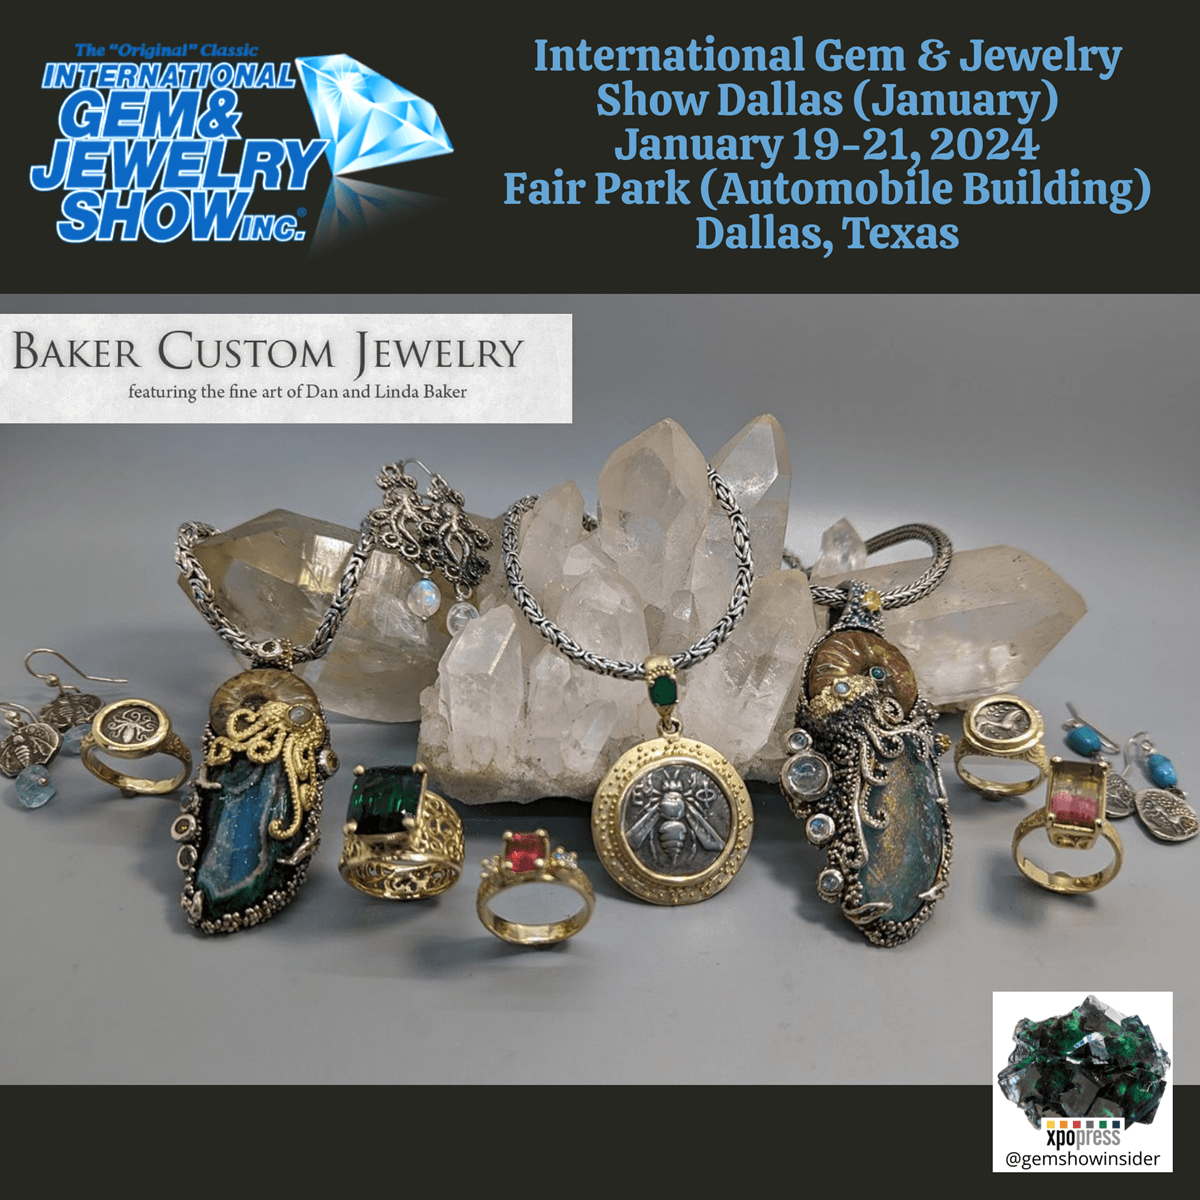 The International Gem & Jewelry Show Dallas (January) 2024